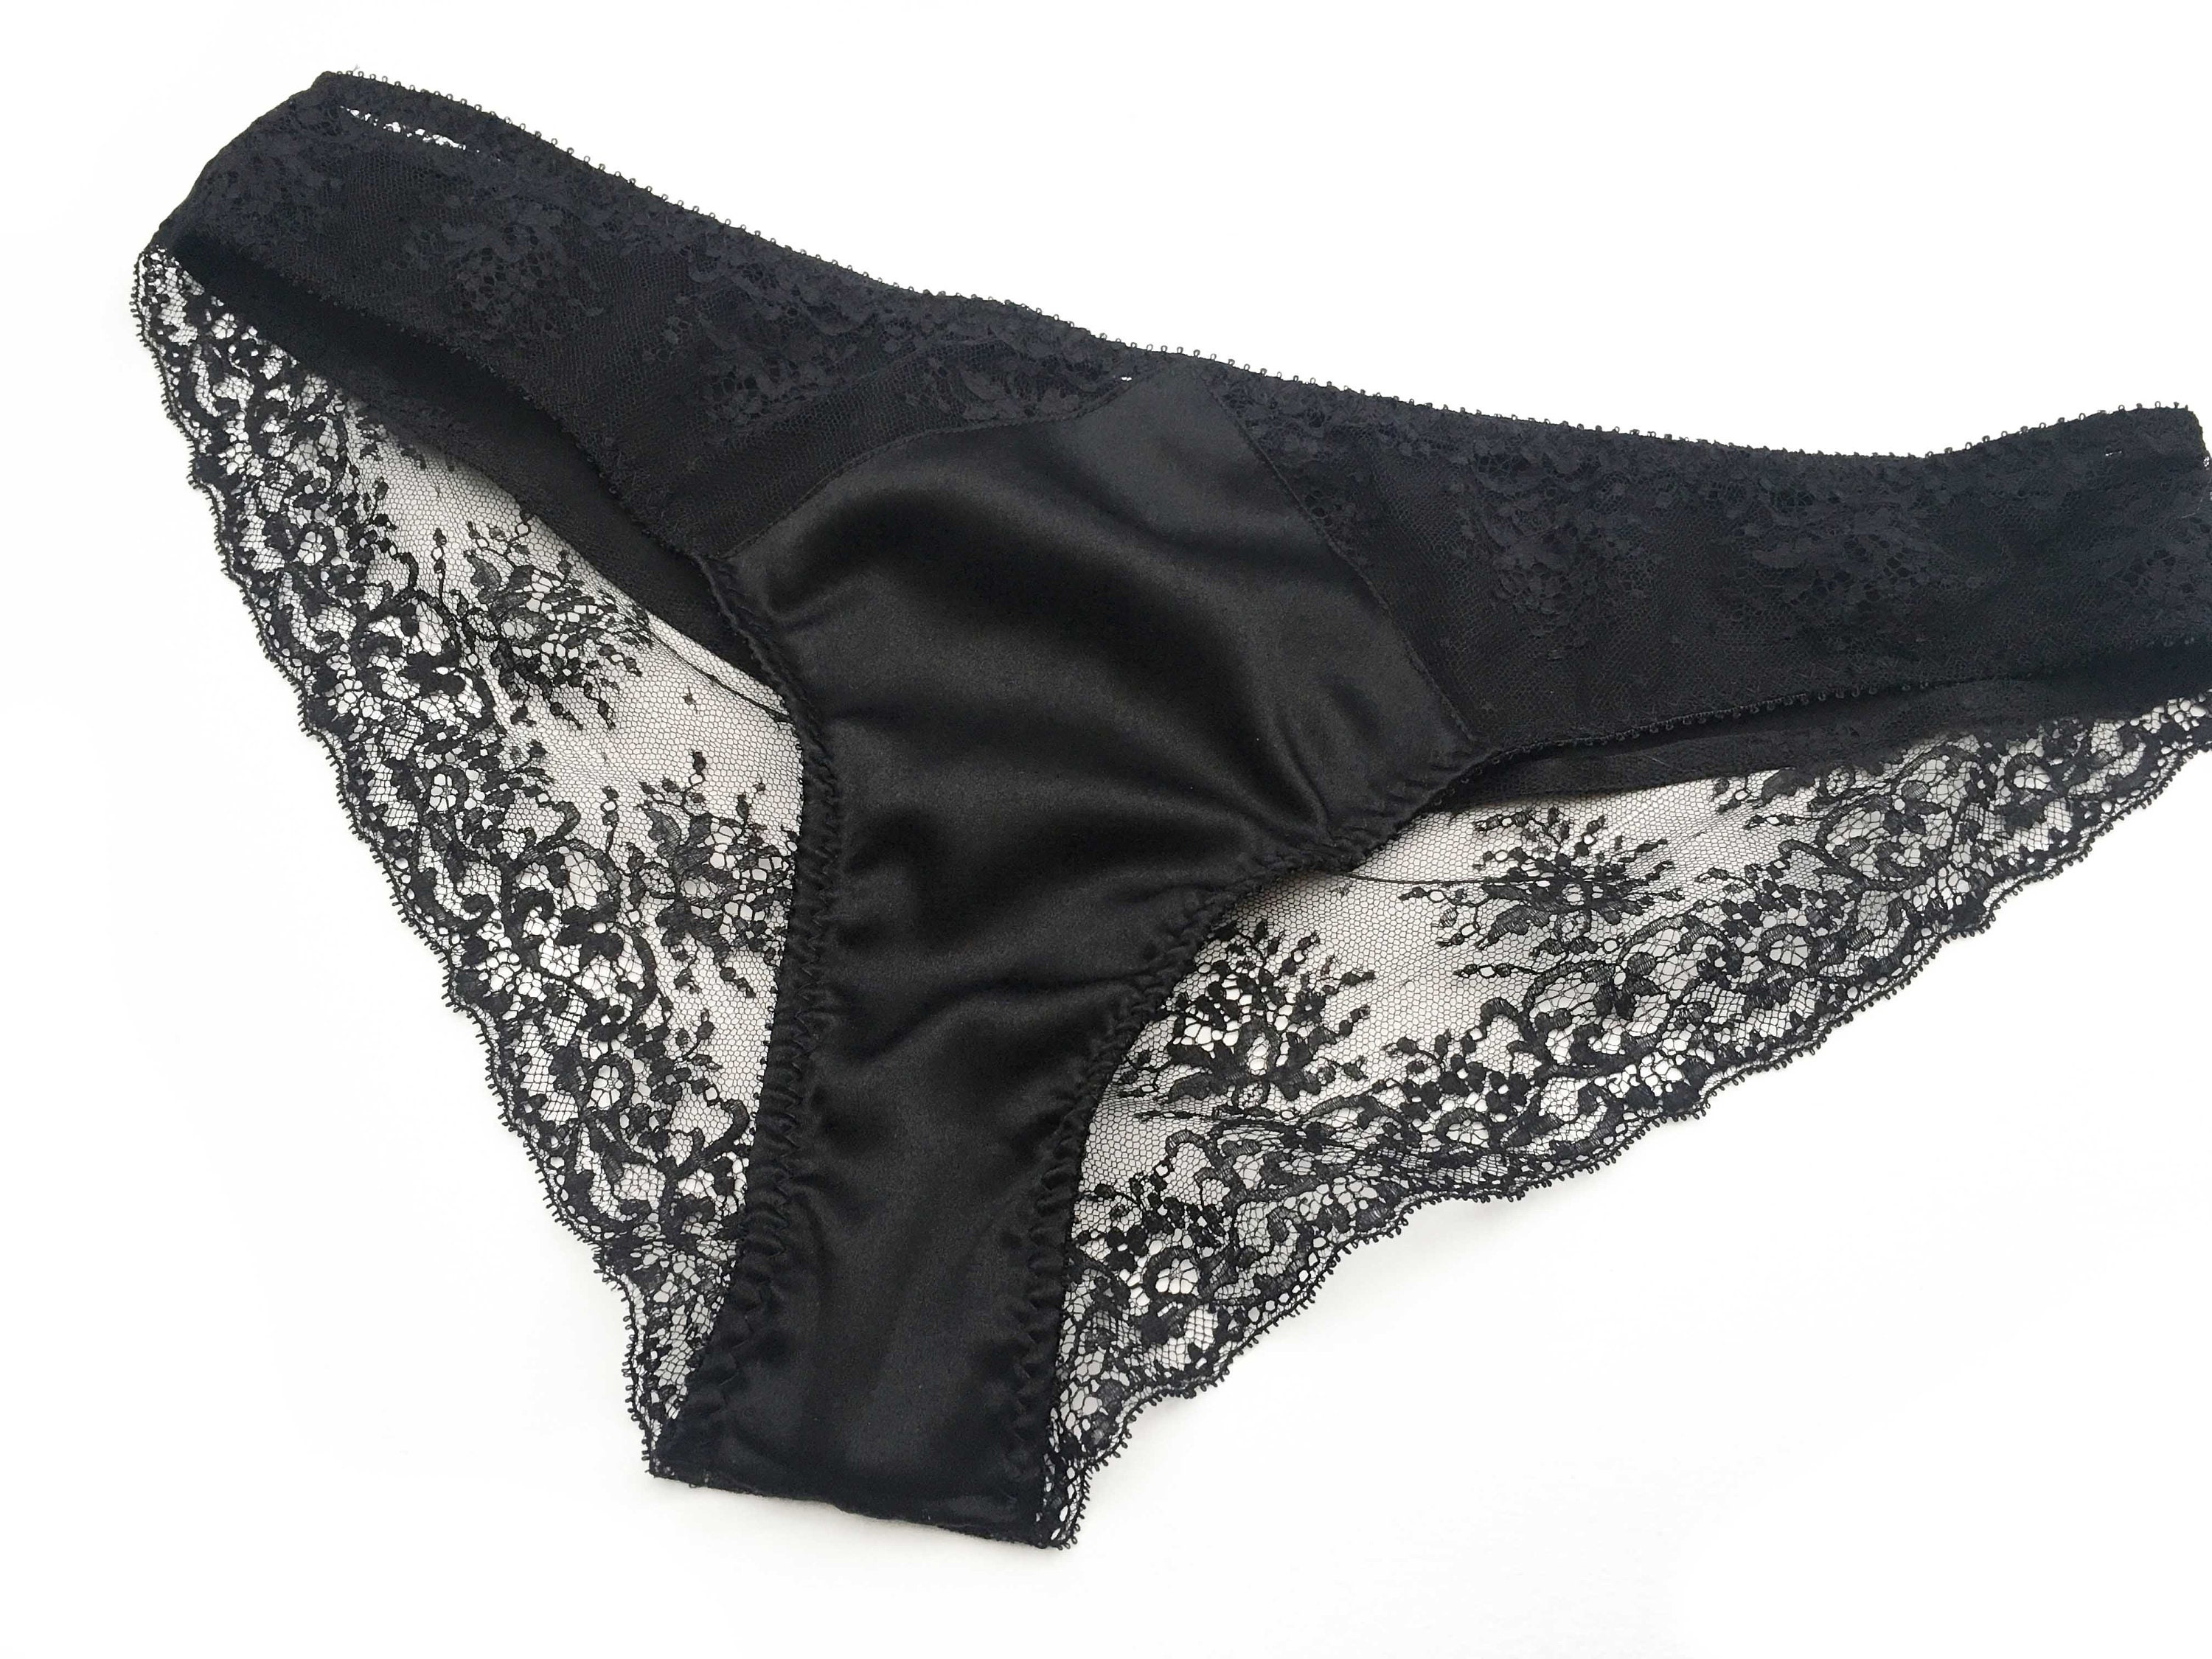 Lace Black Panties Lace Brief Black Lingerie 